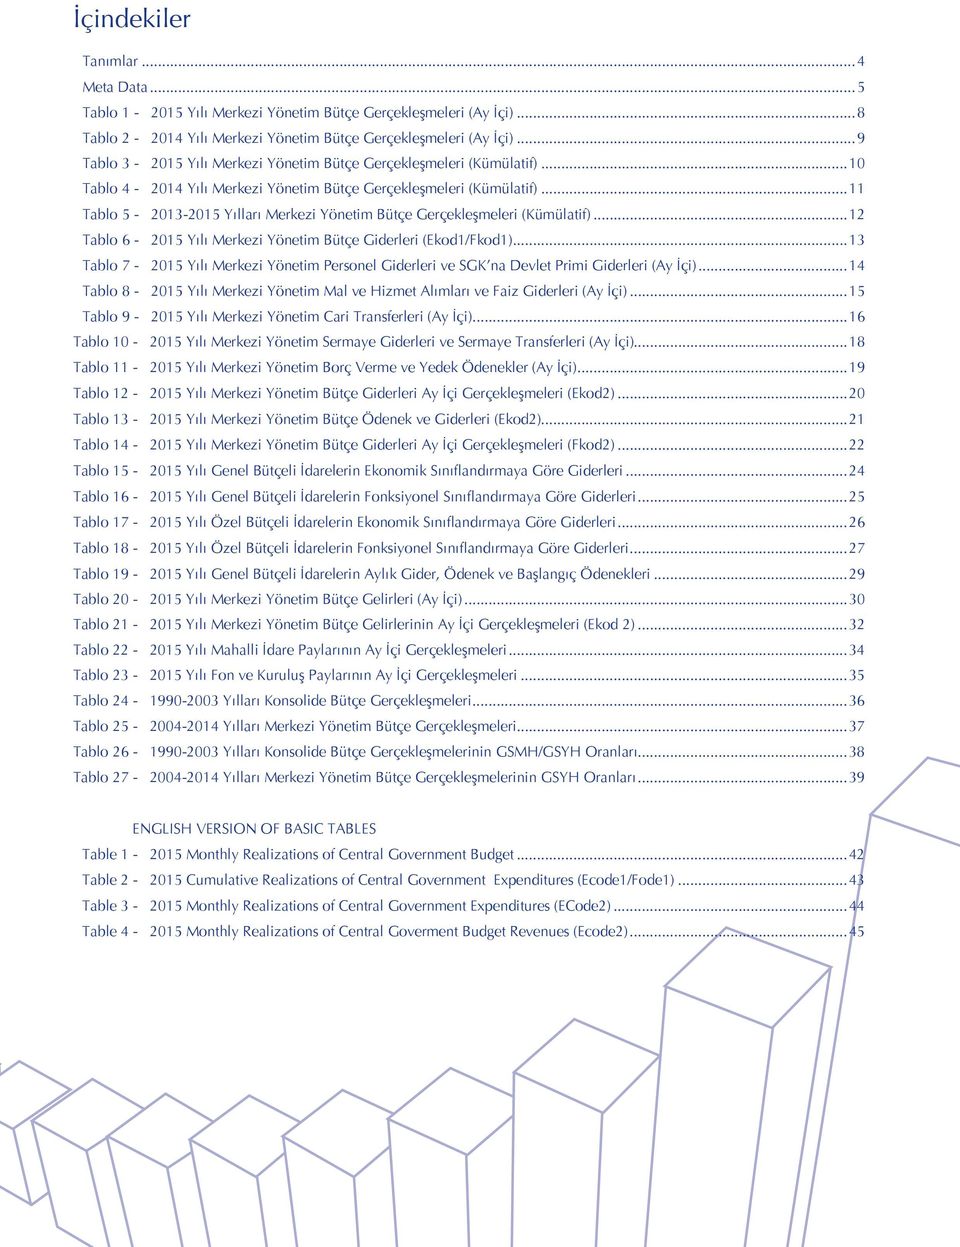 ..11 Tablo 5-2013-2015 Yılları Merkezi Yönetim Bütçe Gerçekleşmeleri (Kümülatif)...12 Tablo 6-2015 Yılı Merkezi Yönetim Bütçe Giderleri (Ekod1/Fkod1).